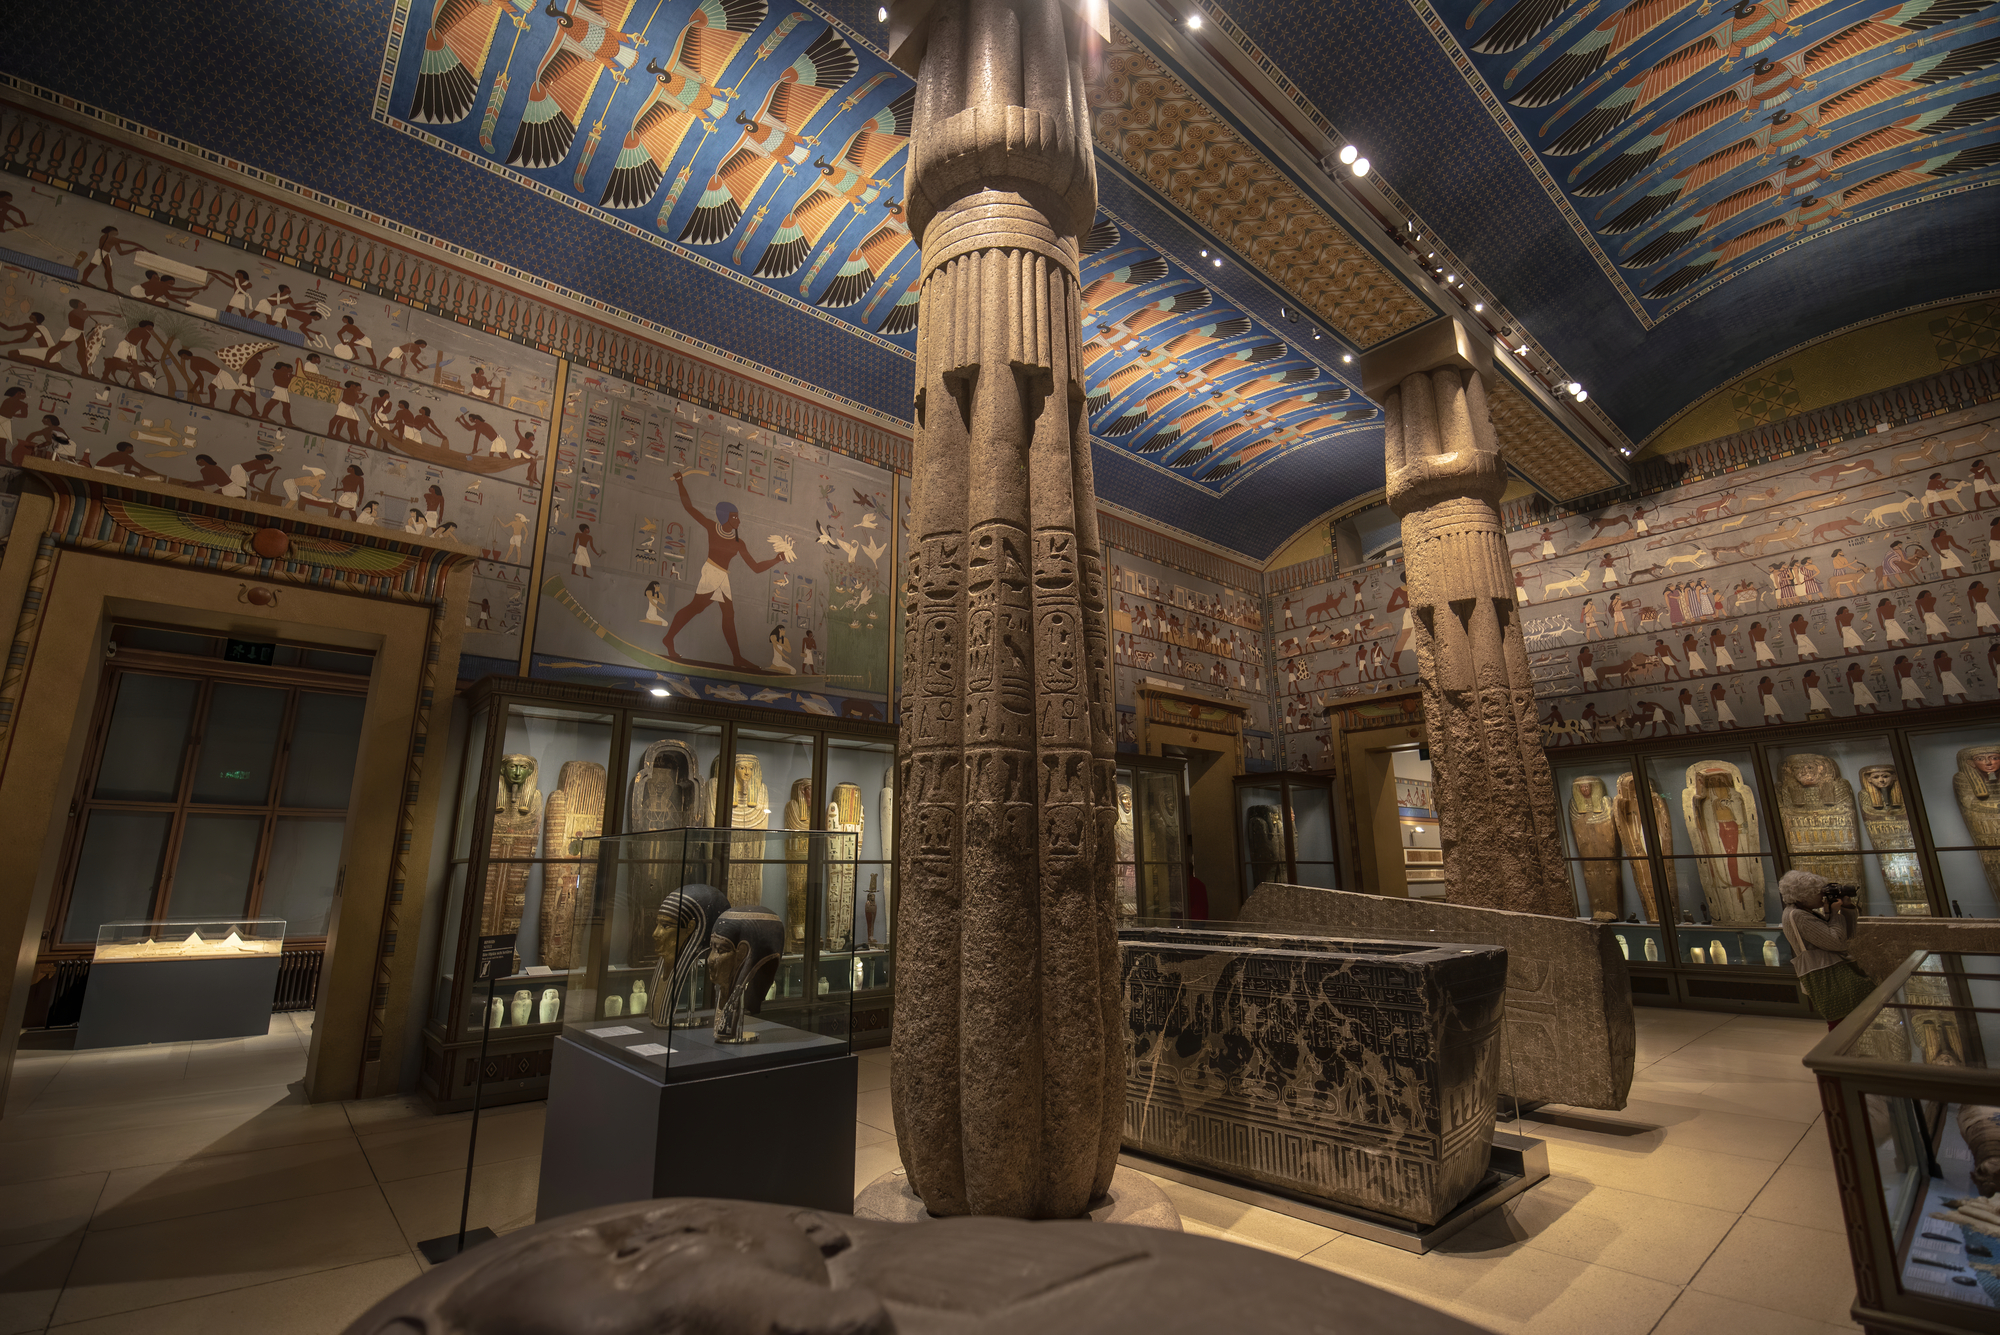 The Egyptian hall